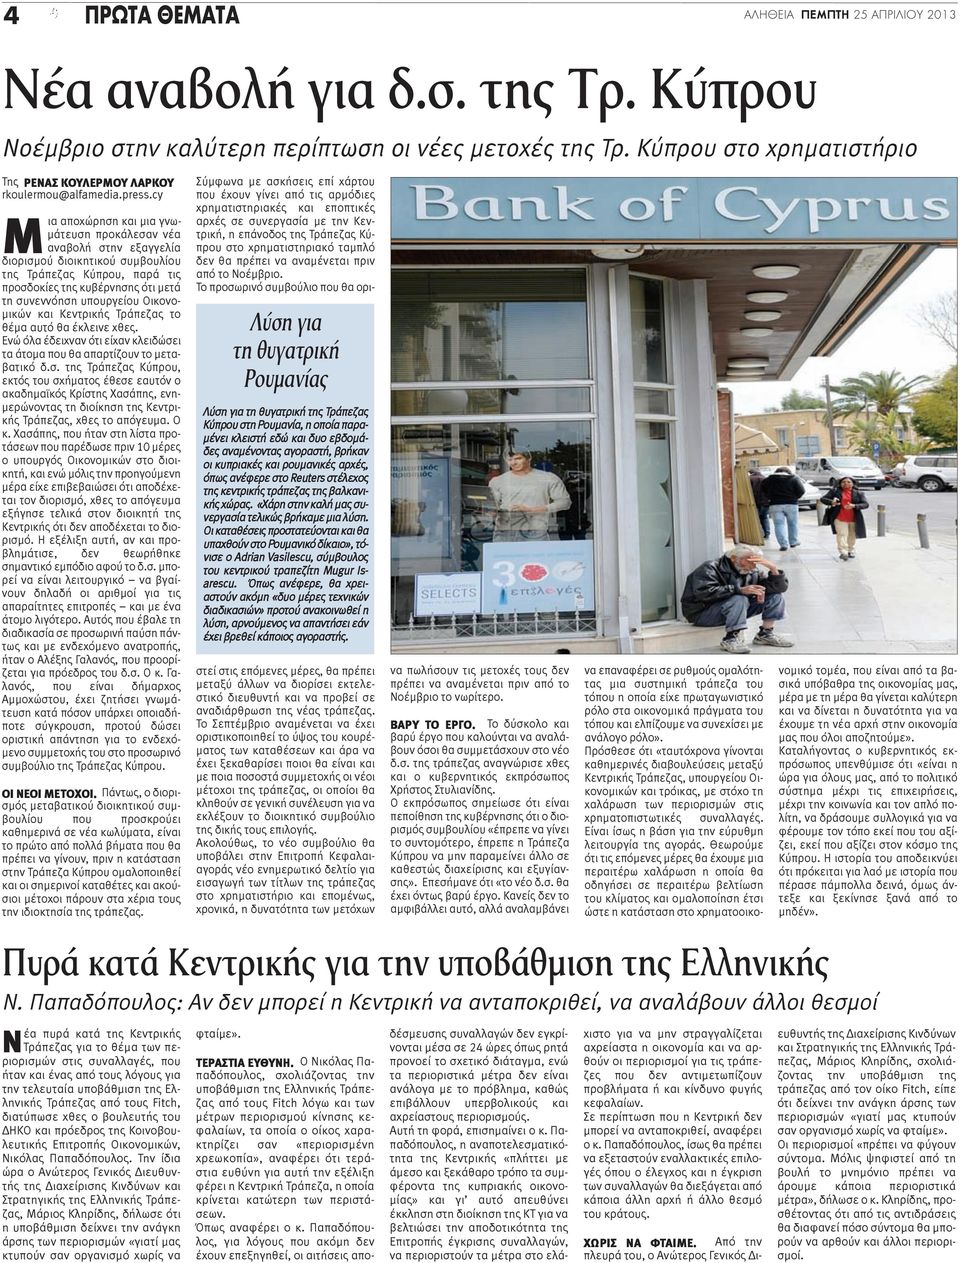 cy Μια αποχώρηση και μια γνωμάτευση προκάλεσαν νέα αναβολή στην εξαγγελία διορισμού διοικητικού συμβουλίου της Τράπεζας Κύπρου, παρά τις προσδοκίες της κυβέρνησης ότι μετά τη συνεννόηση υπουργείου